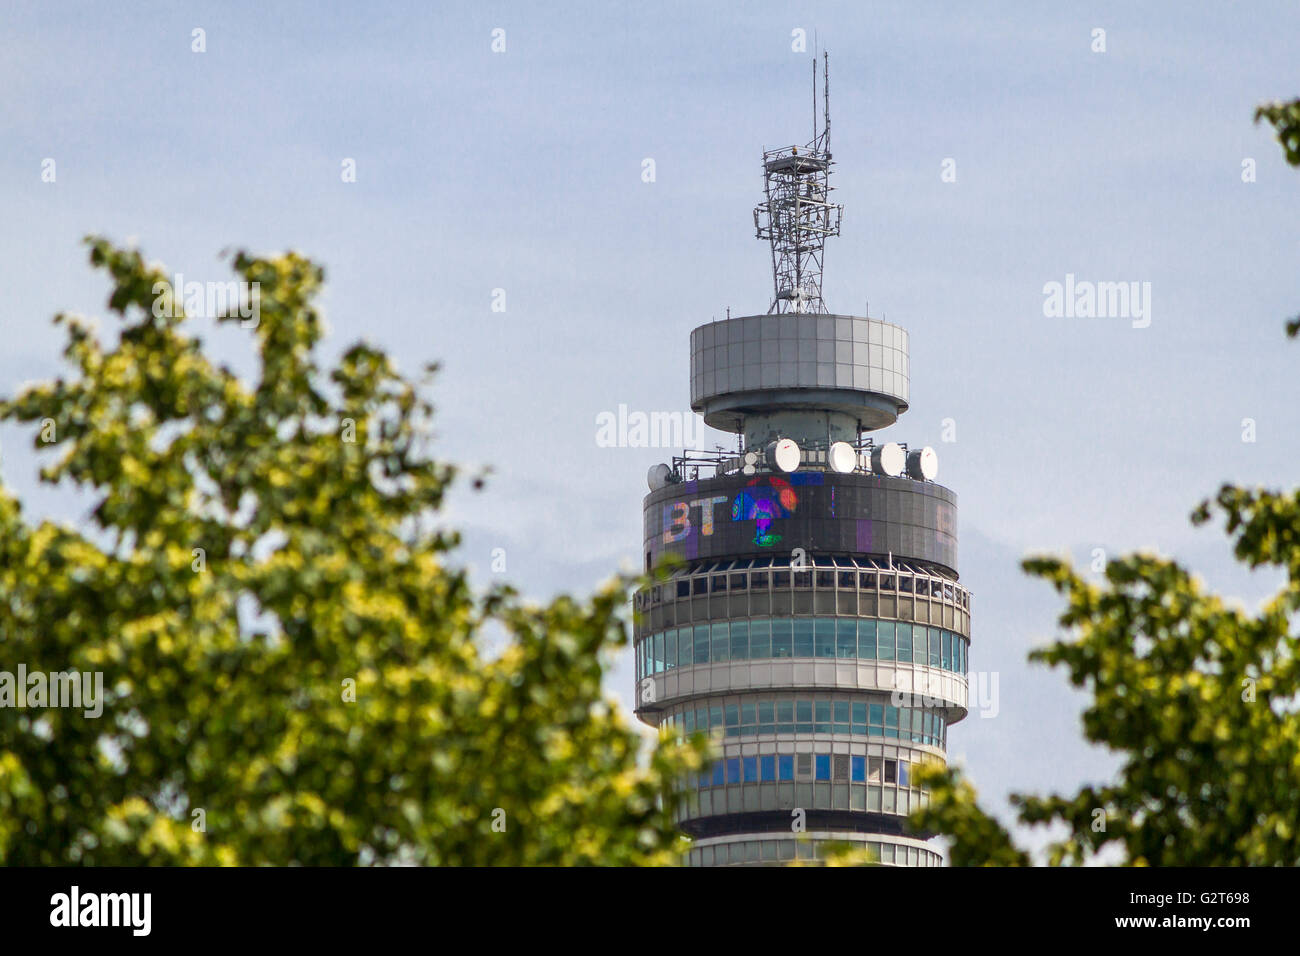 La tour BT, autrefois connue sous le nom de tour de poste, s'est achevée en 1964, vue à travers les arbres de Regents Park à Londres, Royaume-Uni Banque D'Images